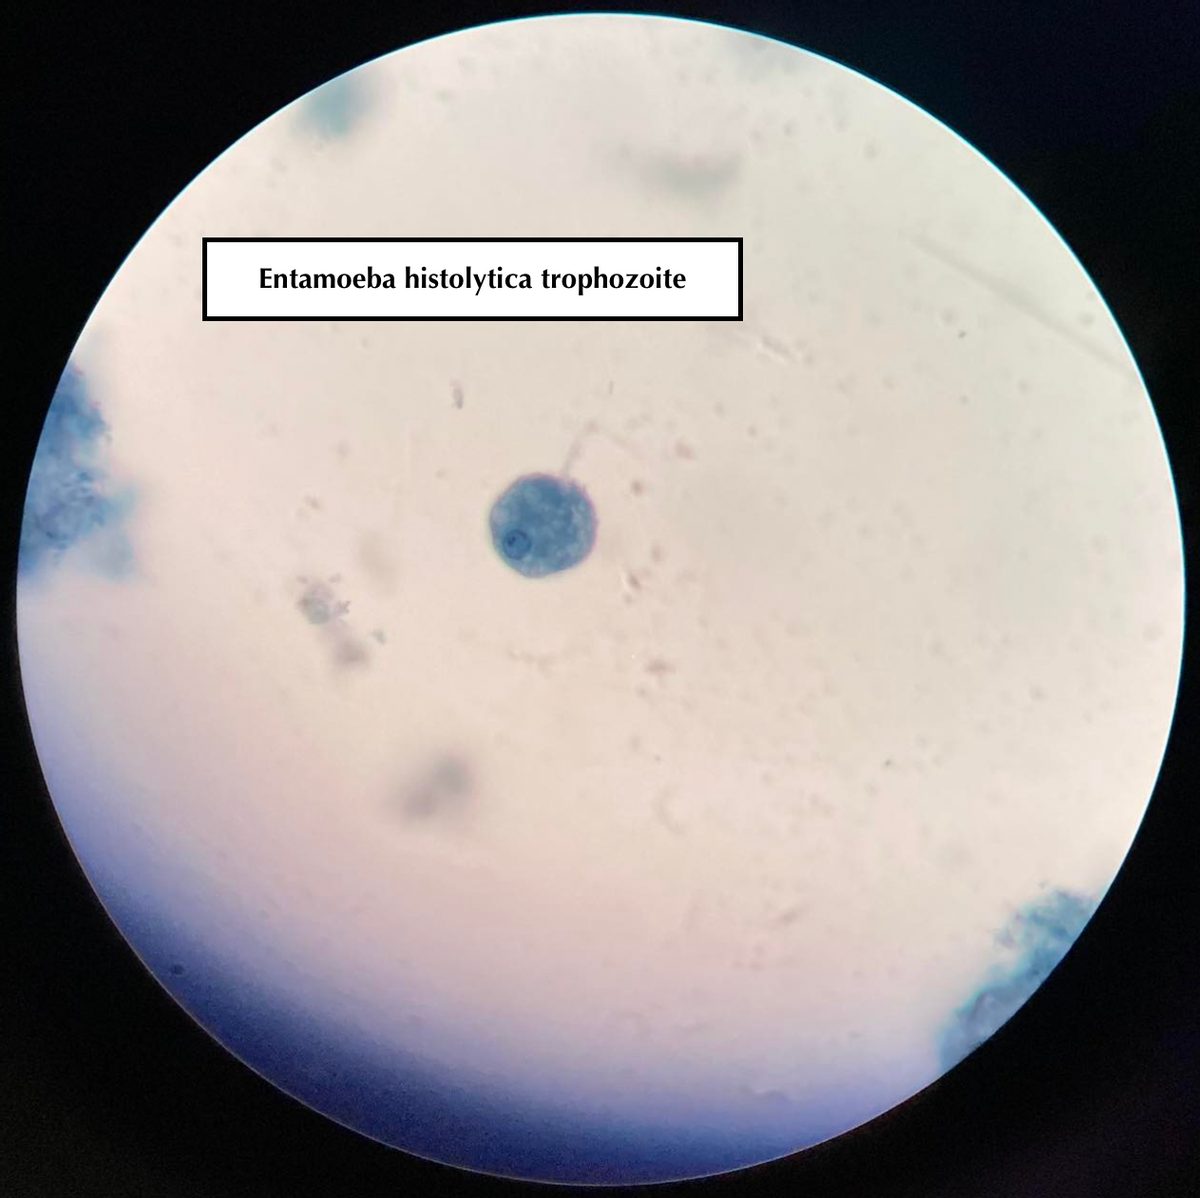 Entamoeba histolytica trophozoite